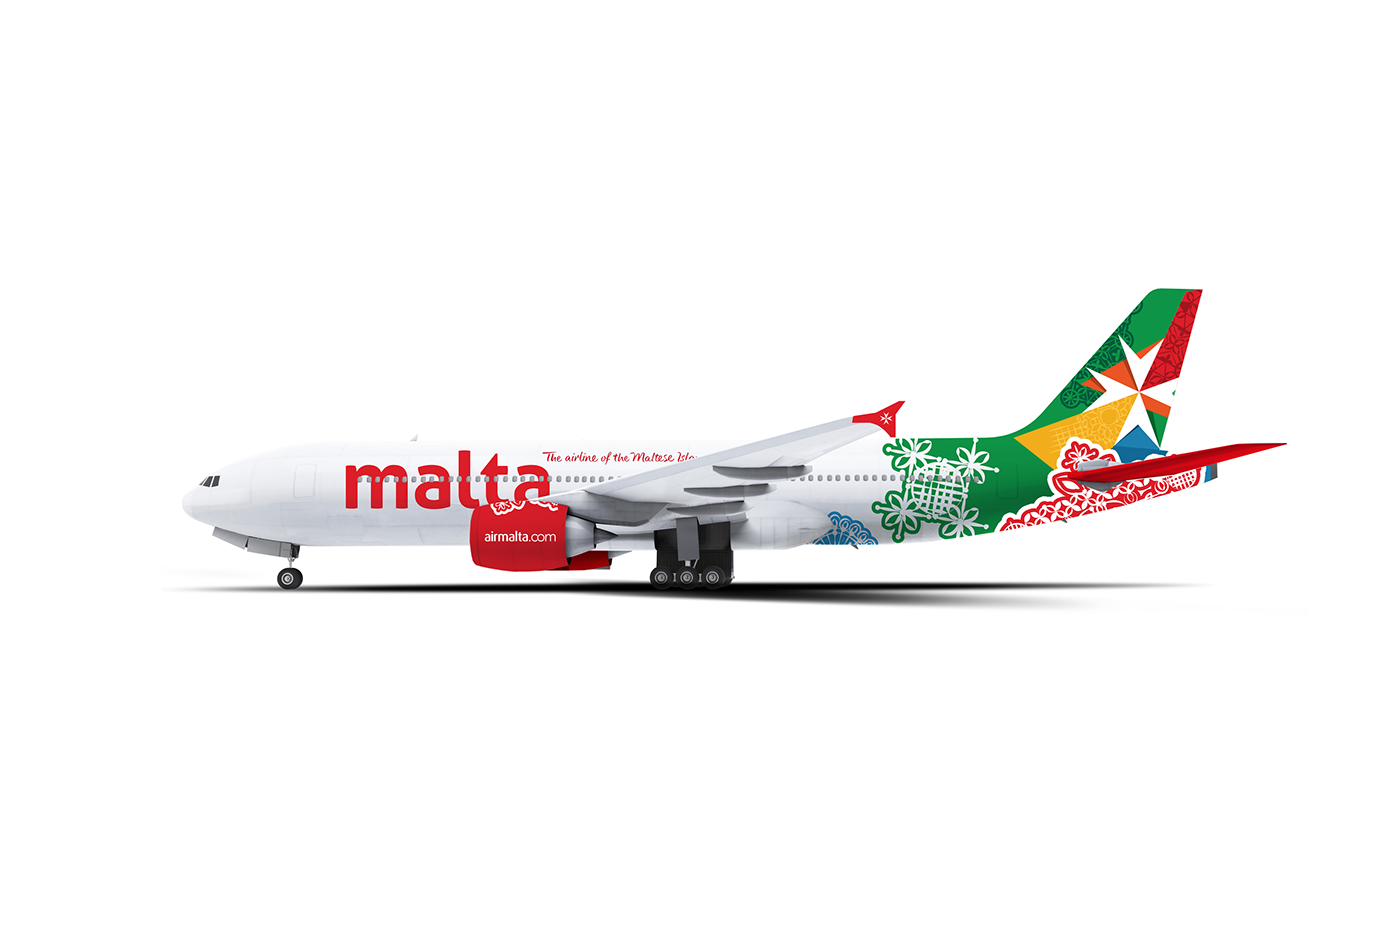 malta Airmalta airline design world branding  rebranding creative bizzilla lace